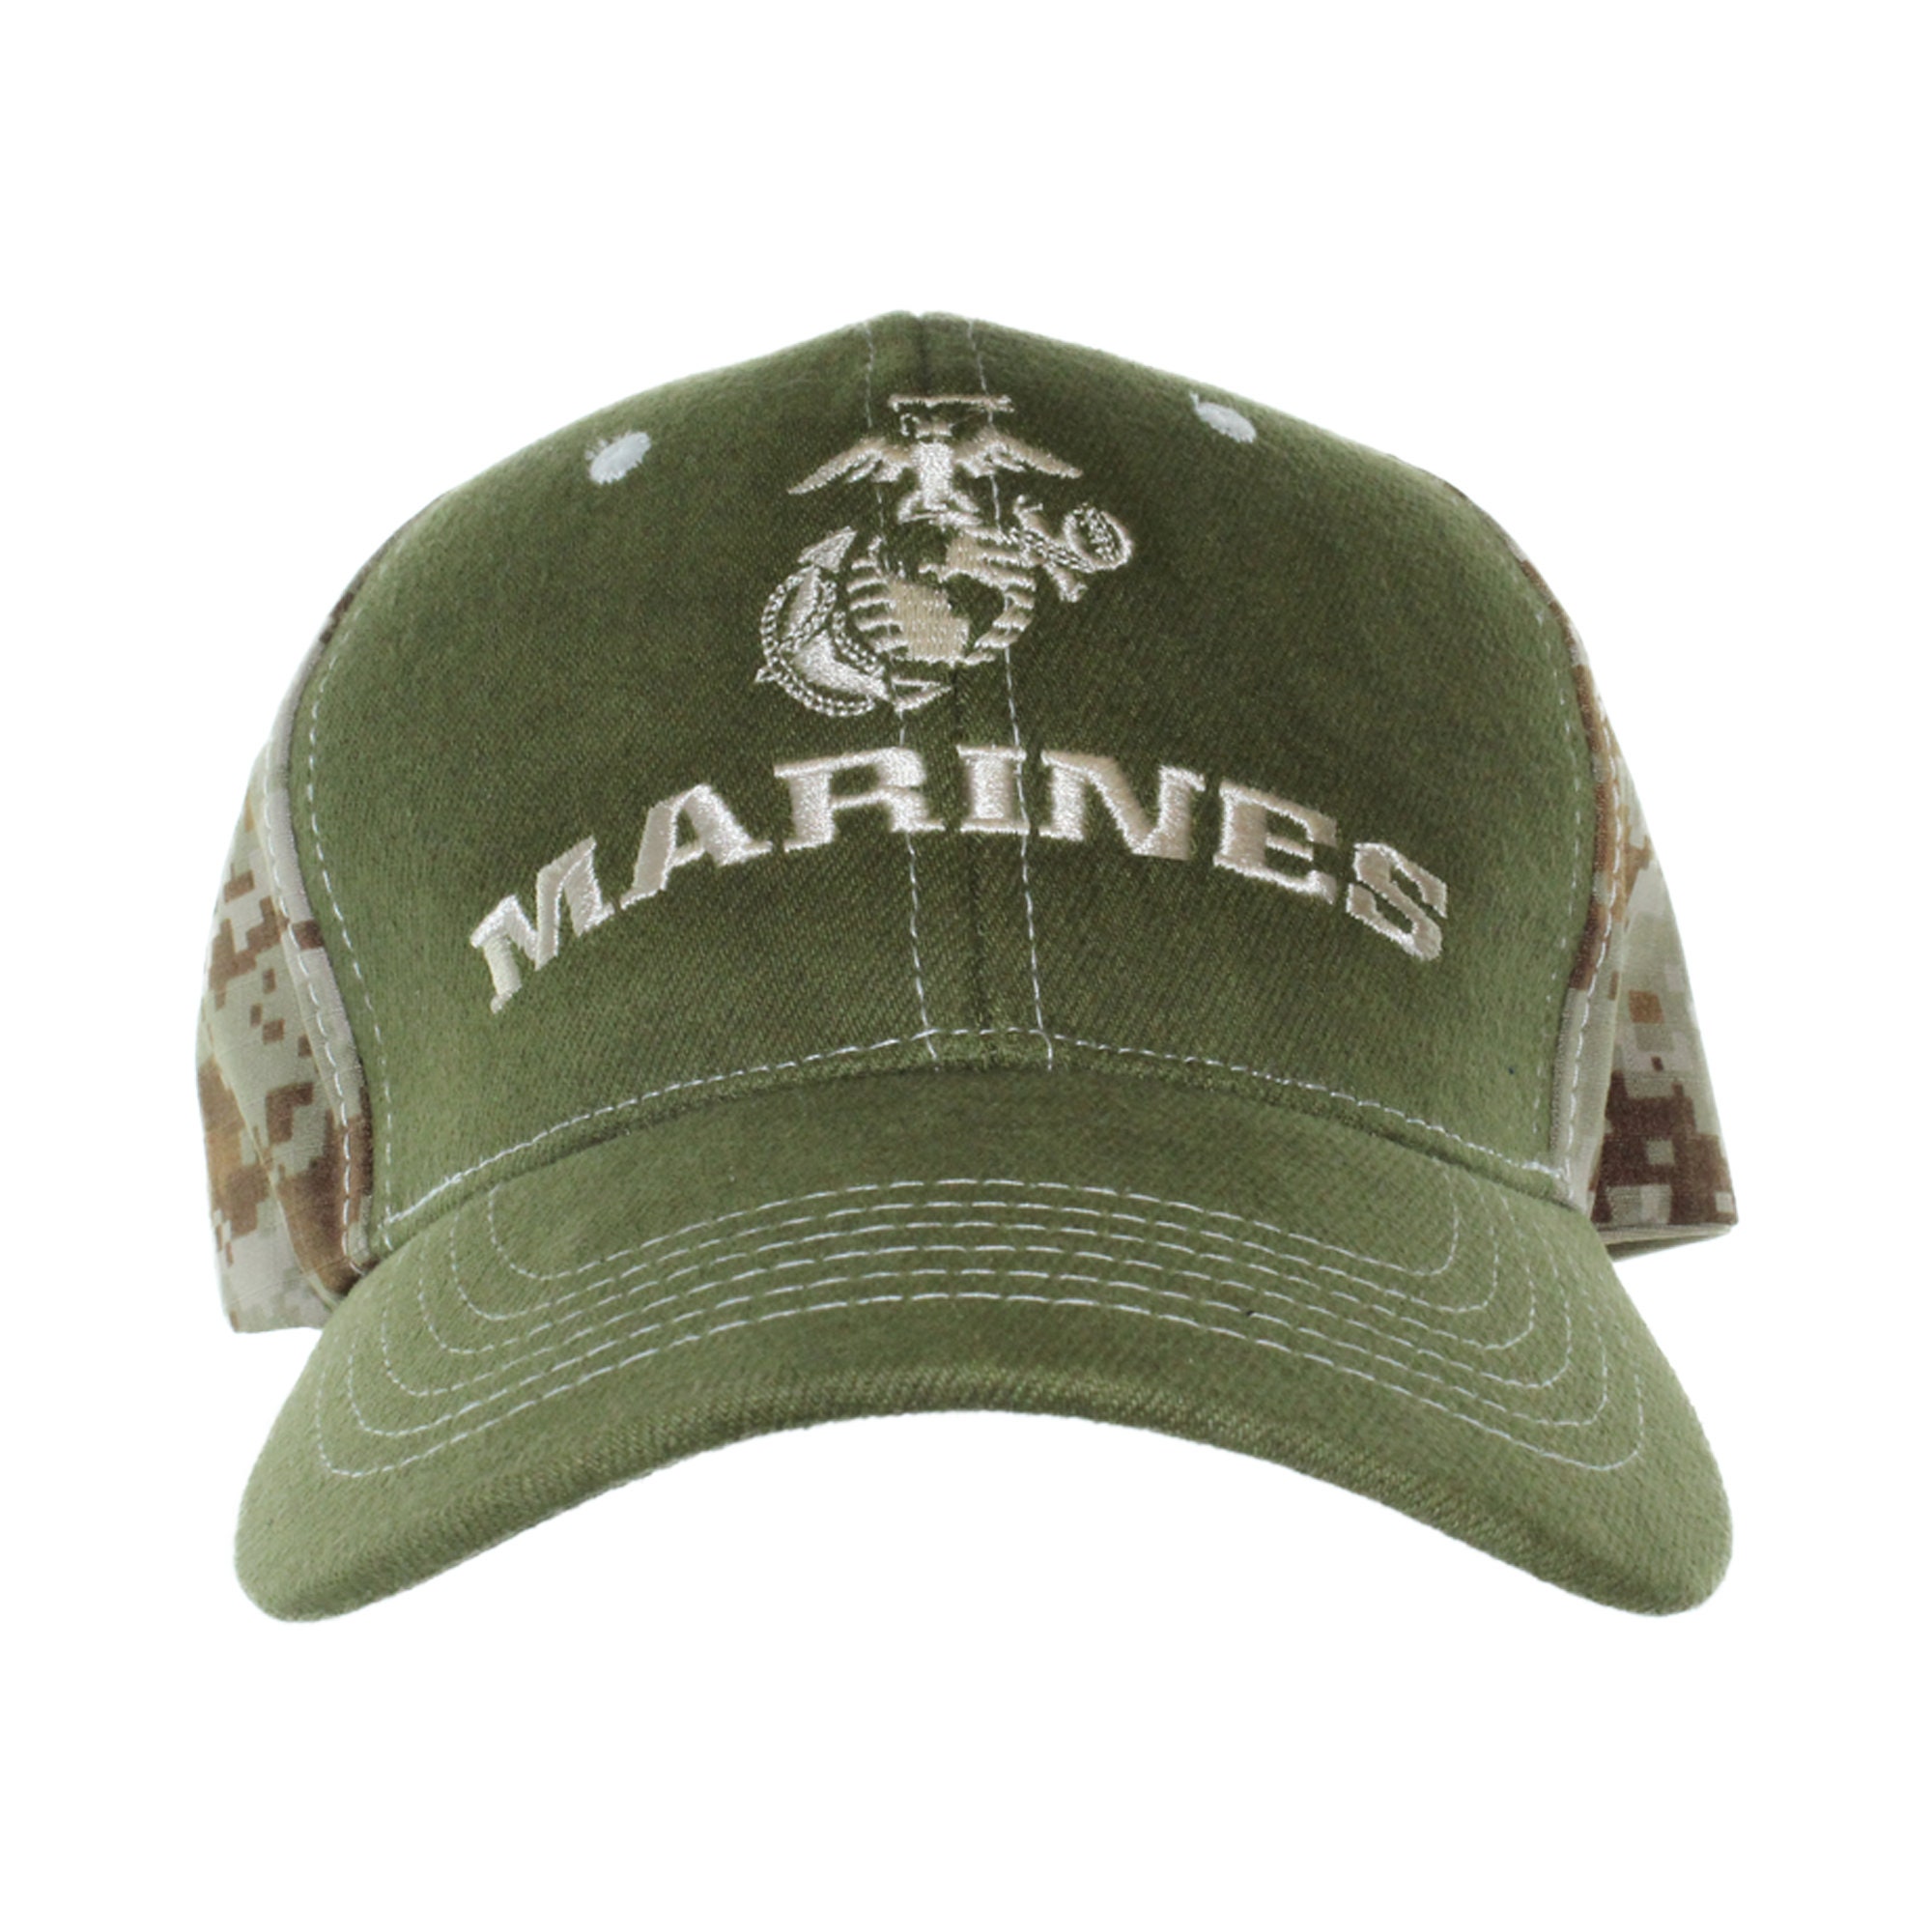 Marine Corps Baseball Cap - Etsy